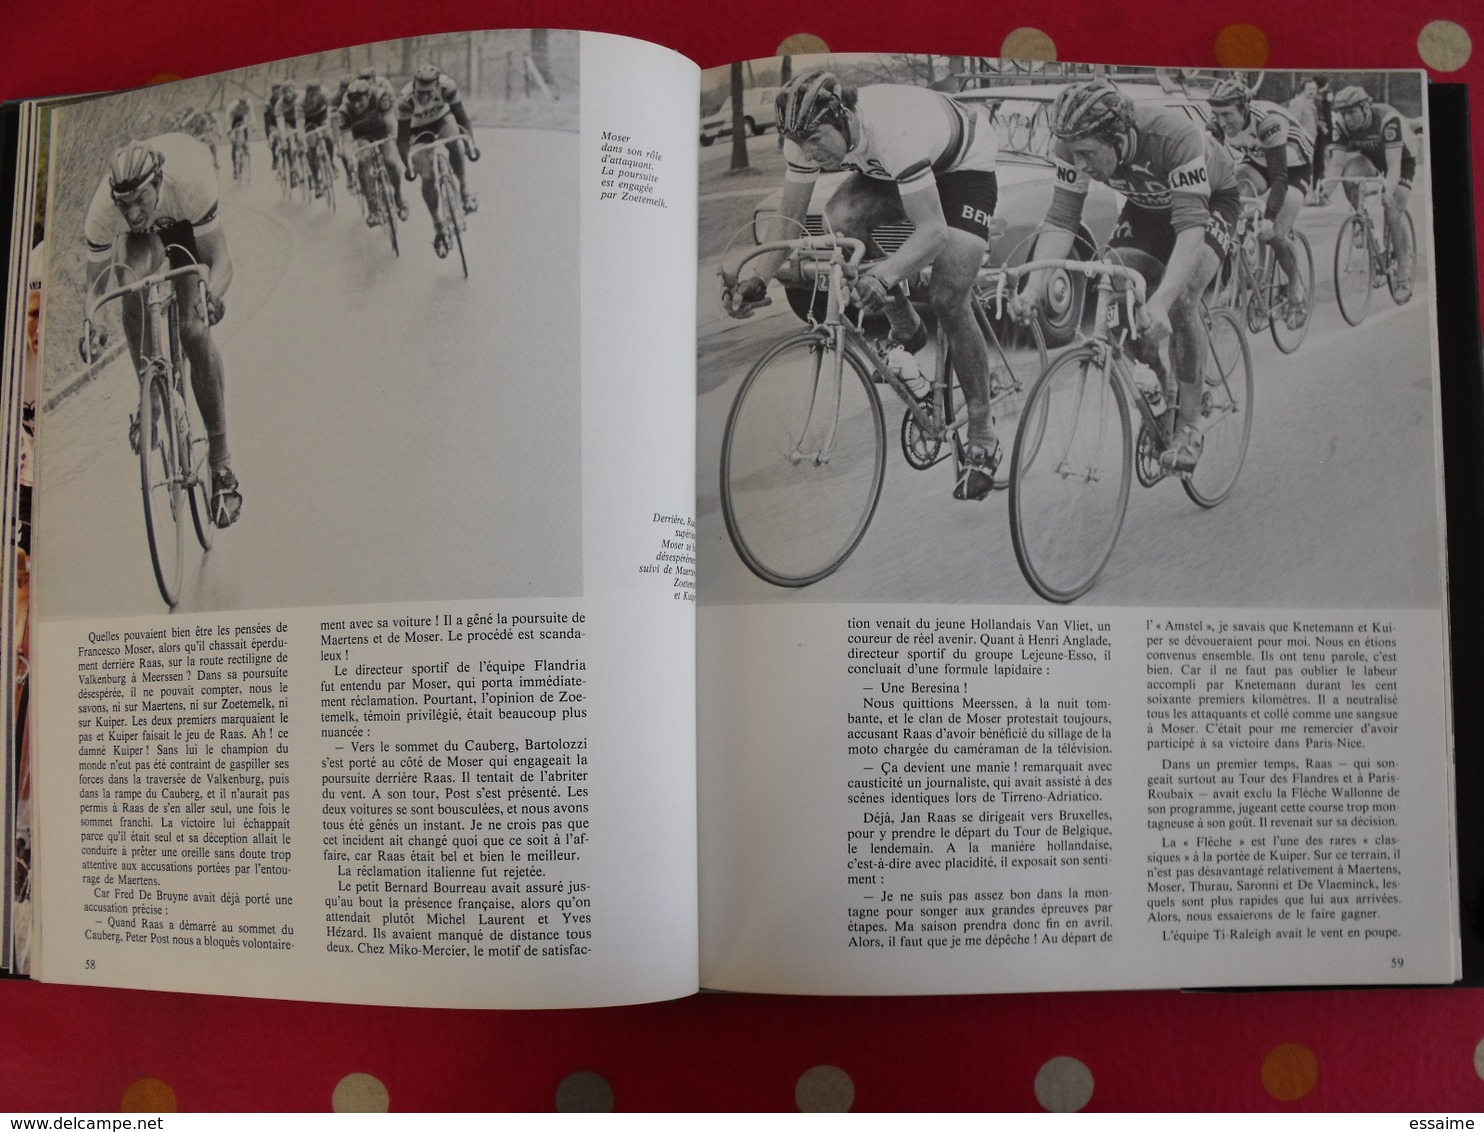 l'année du cyclisme 1978. Pierre Chany. hinault bernaudeau thévenet laurent maertens van impe sercu moser raas